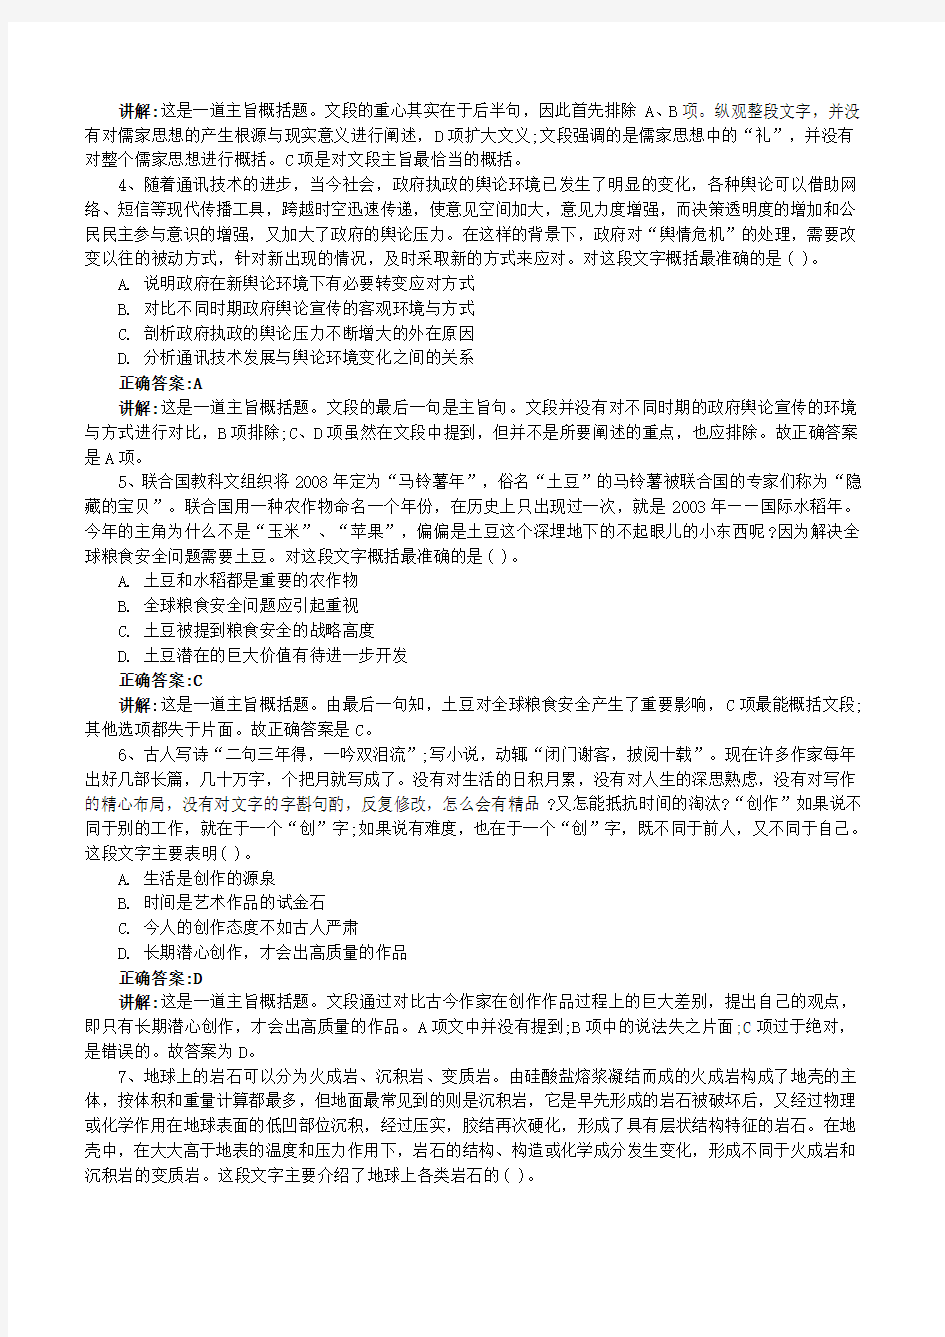 中国人保财险招聘笔试面试复习包历完整真题手机app刷题库 